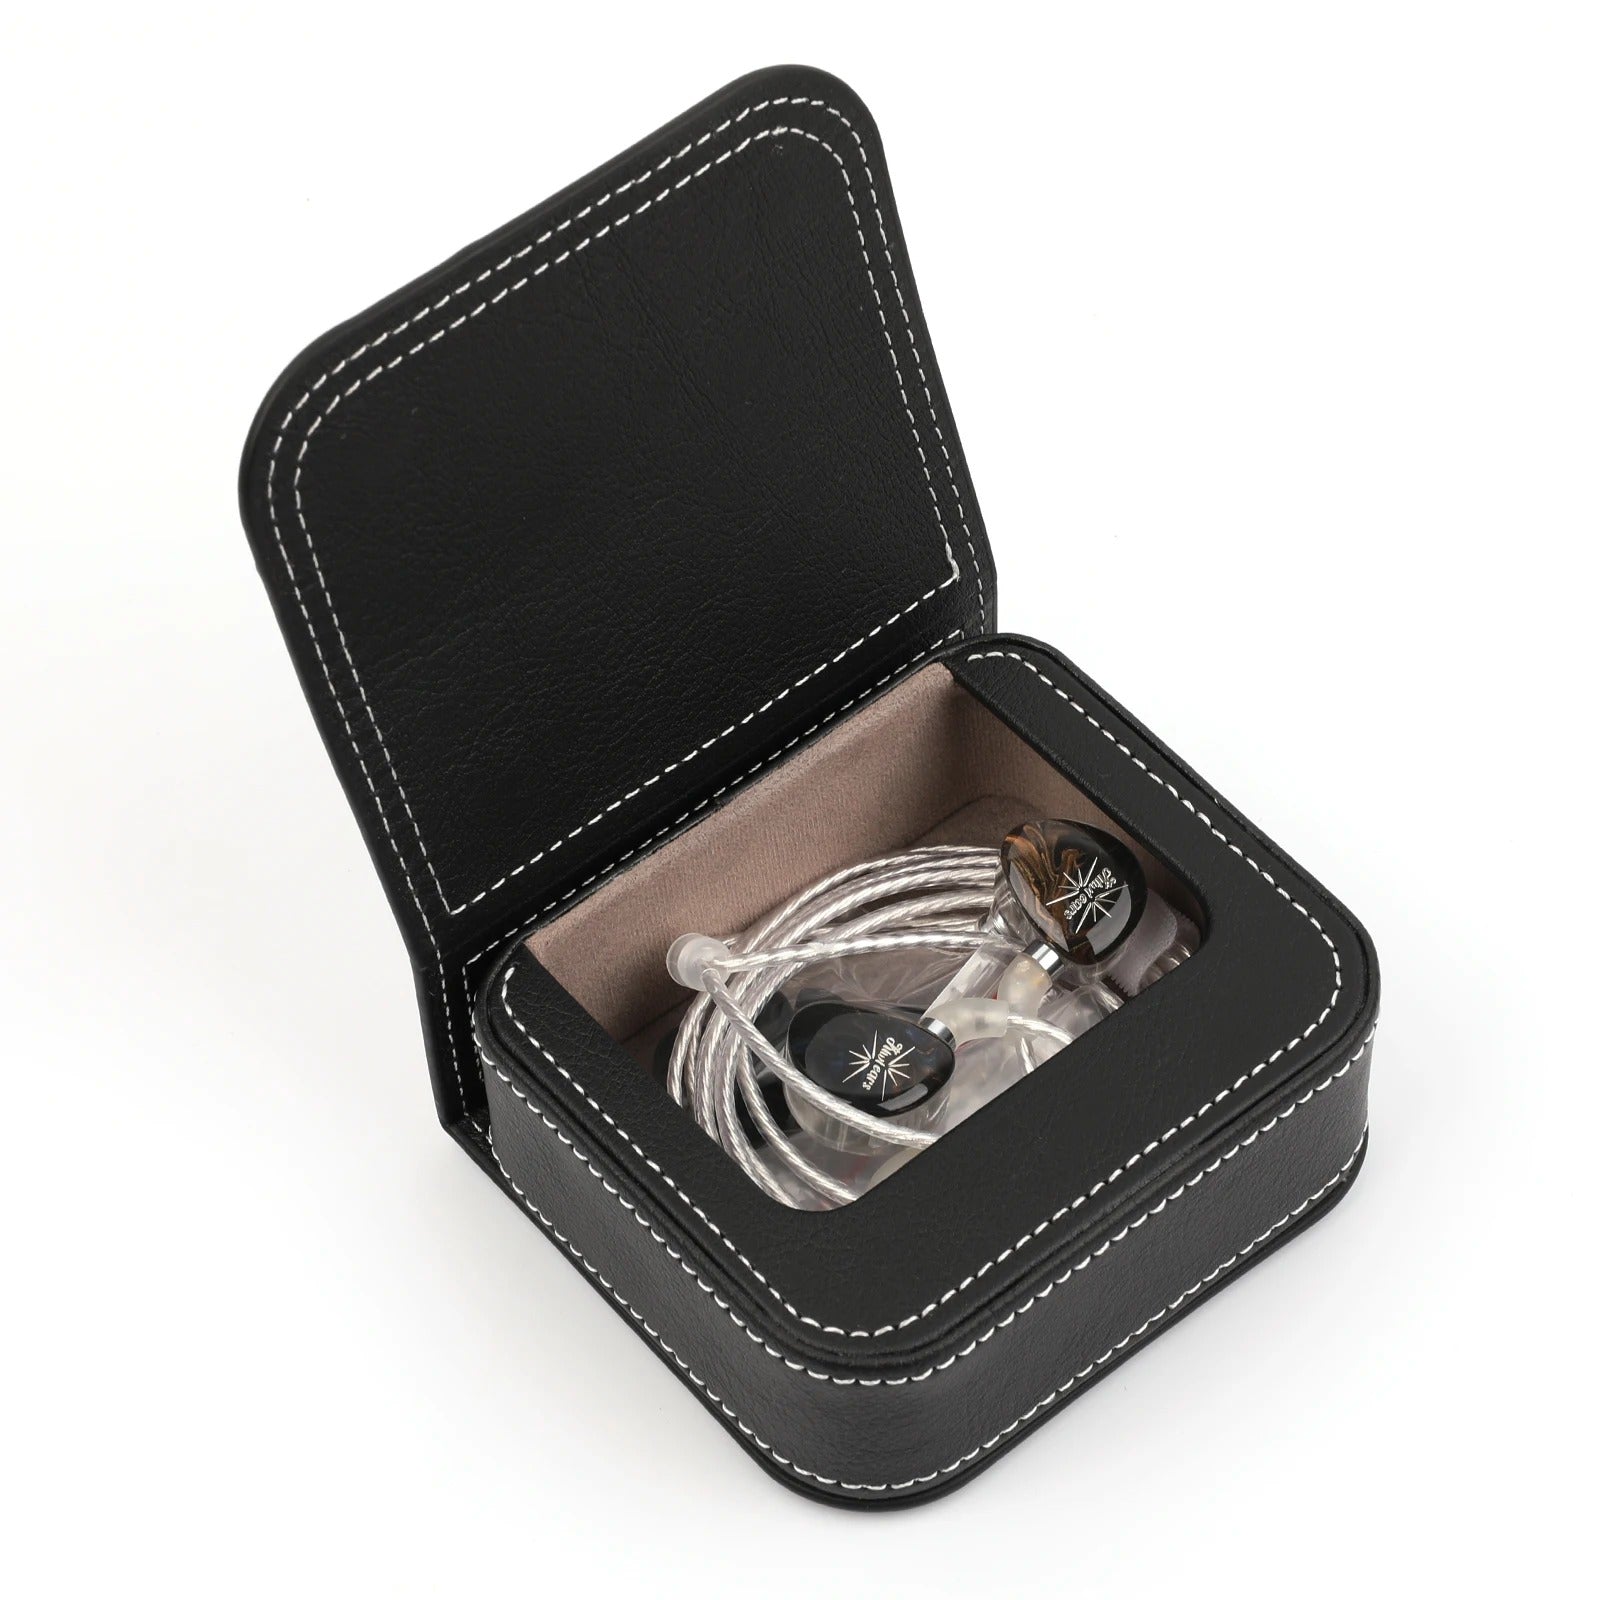 Kiwi Ears In-Ear Monitors (IEM), Earphones leather Carry Case